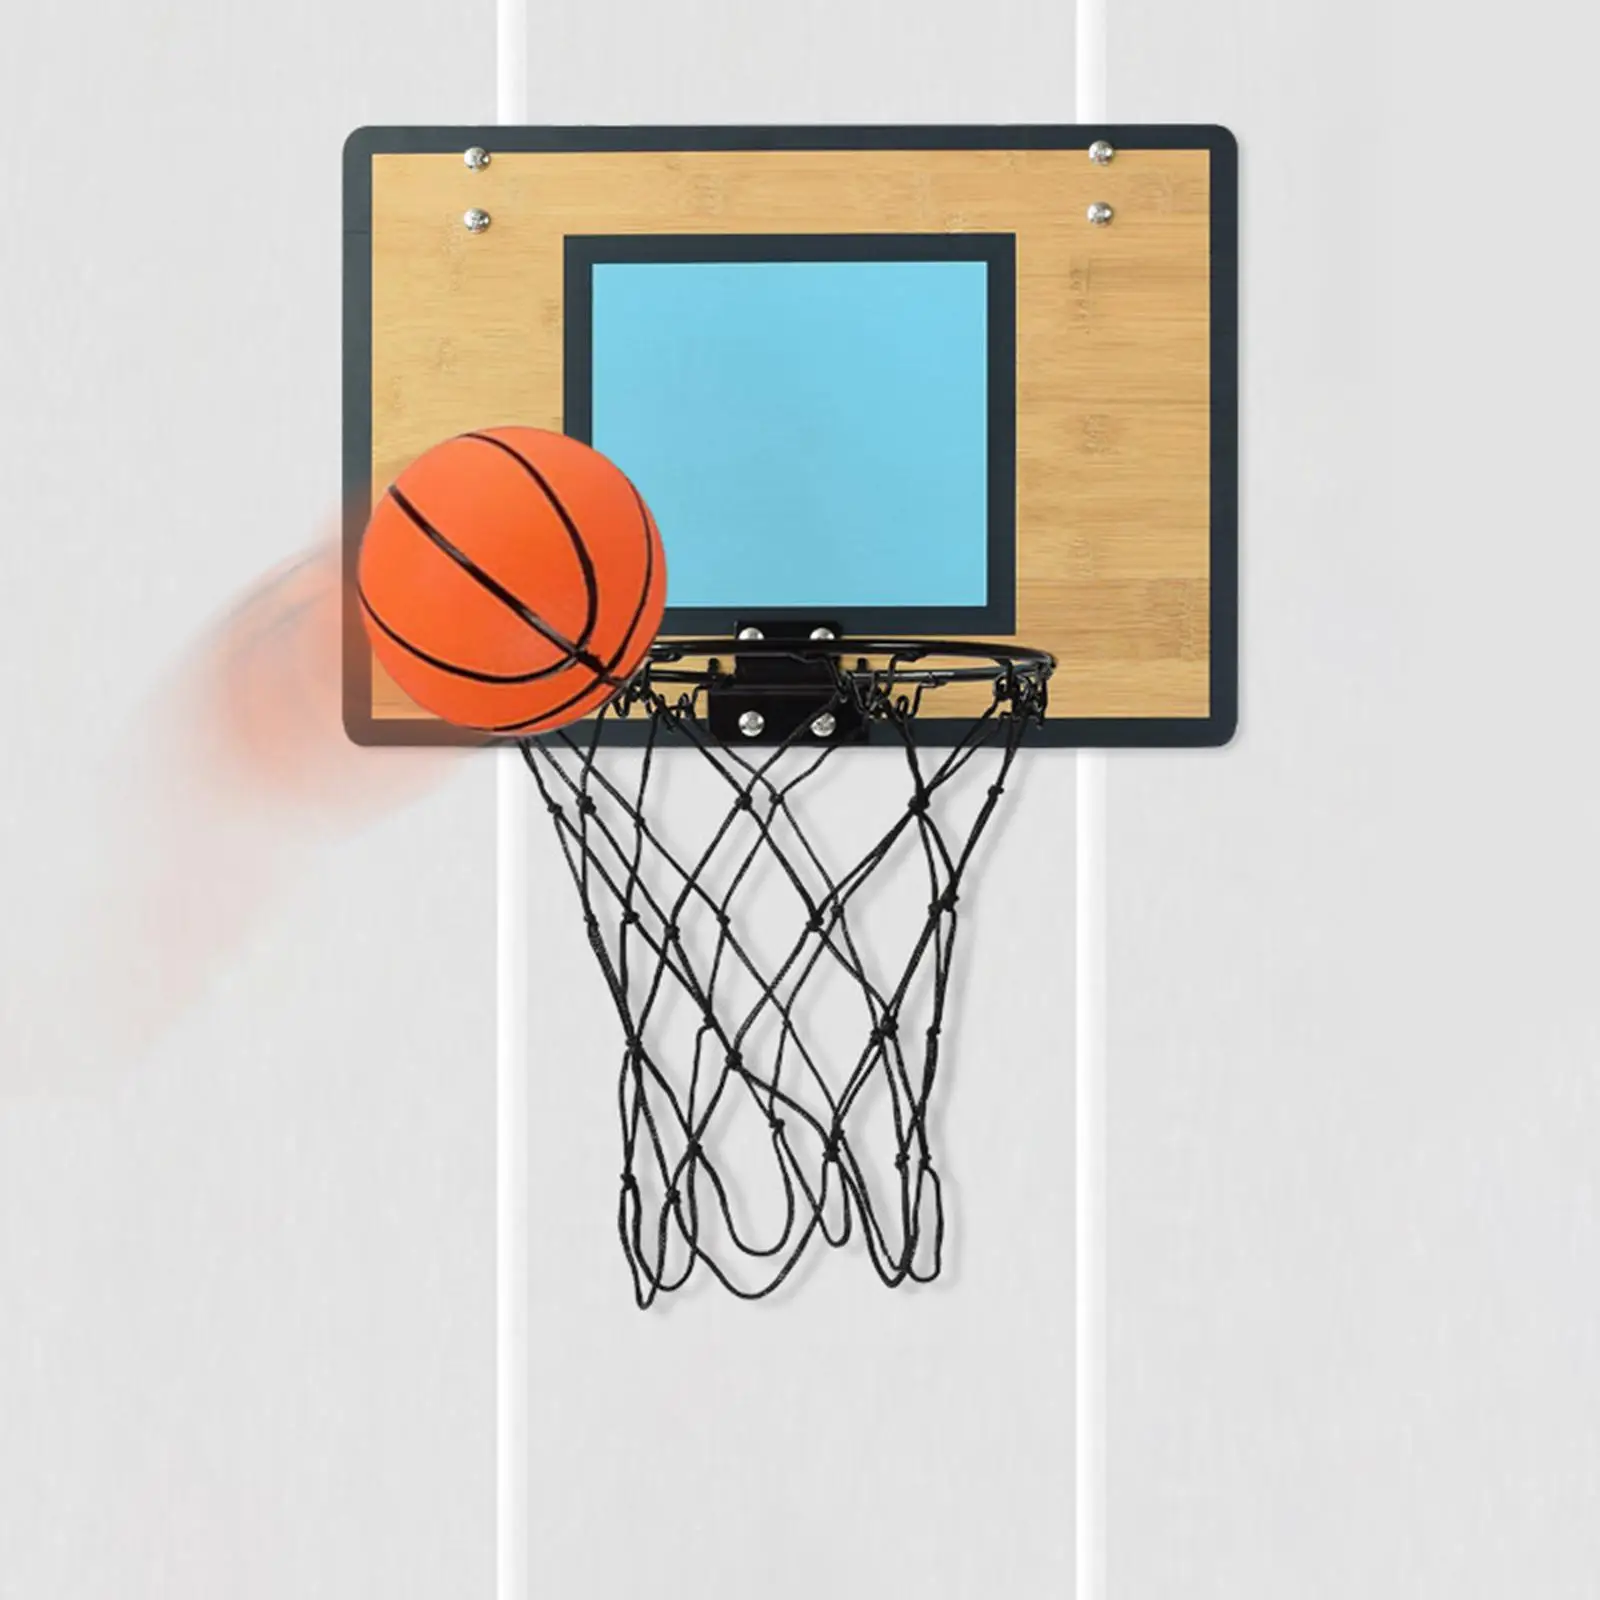 Mini Basketball Hoop over The Door Bamboo Backboard Basketball Goal Basketball